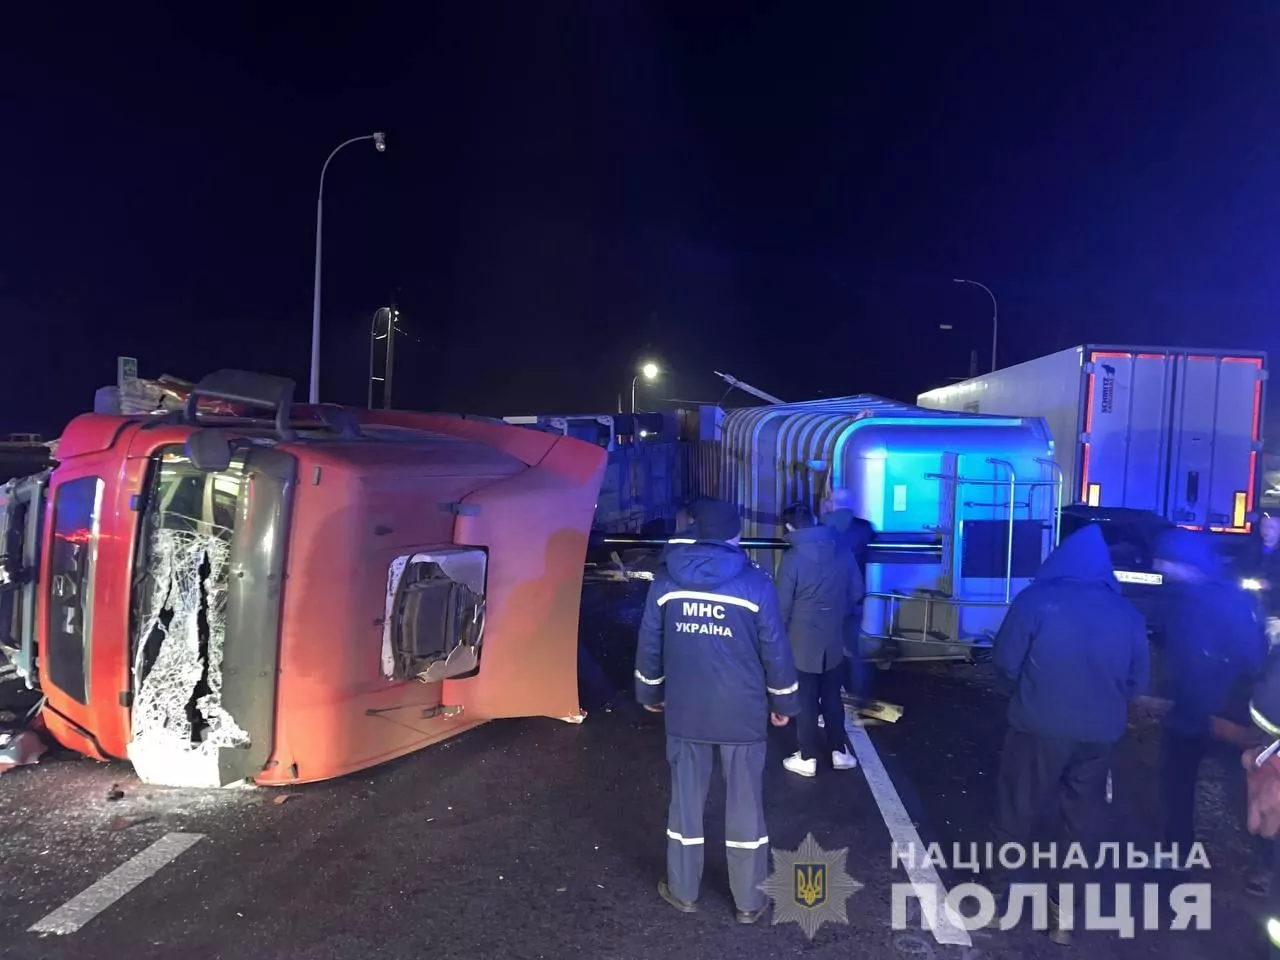 Авария случилась, когда на улице уже стемнело/Фото: Полиция Харьковской области